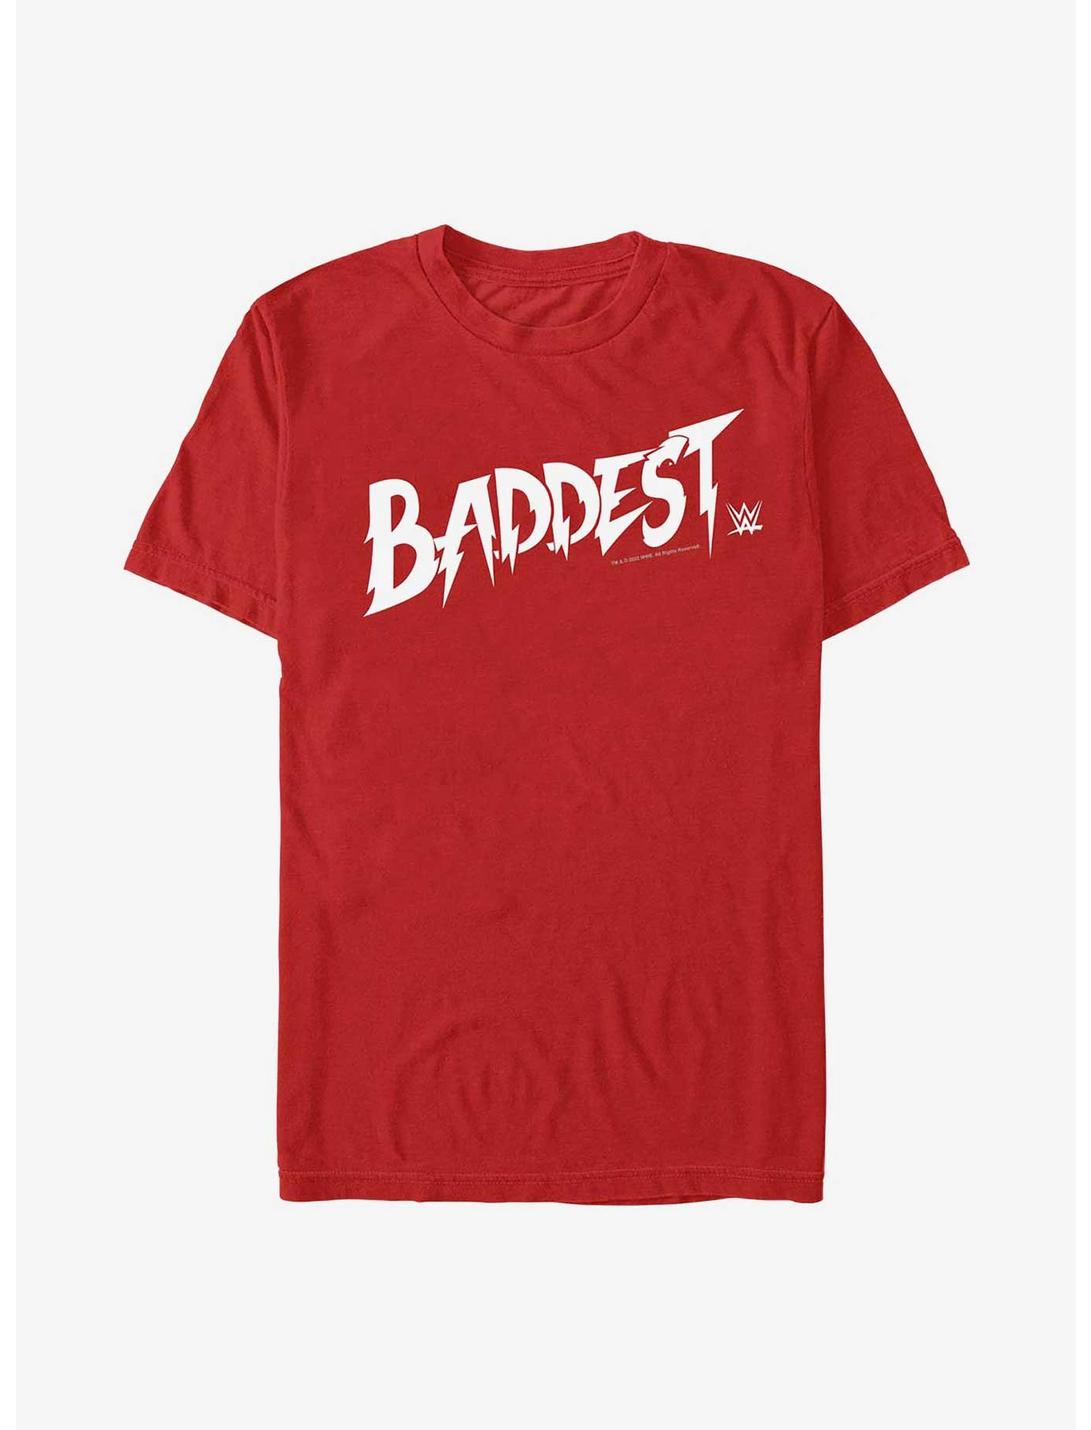 WWE Ronda Rousey Baddest Logo T-Shirt, RED, hi-res